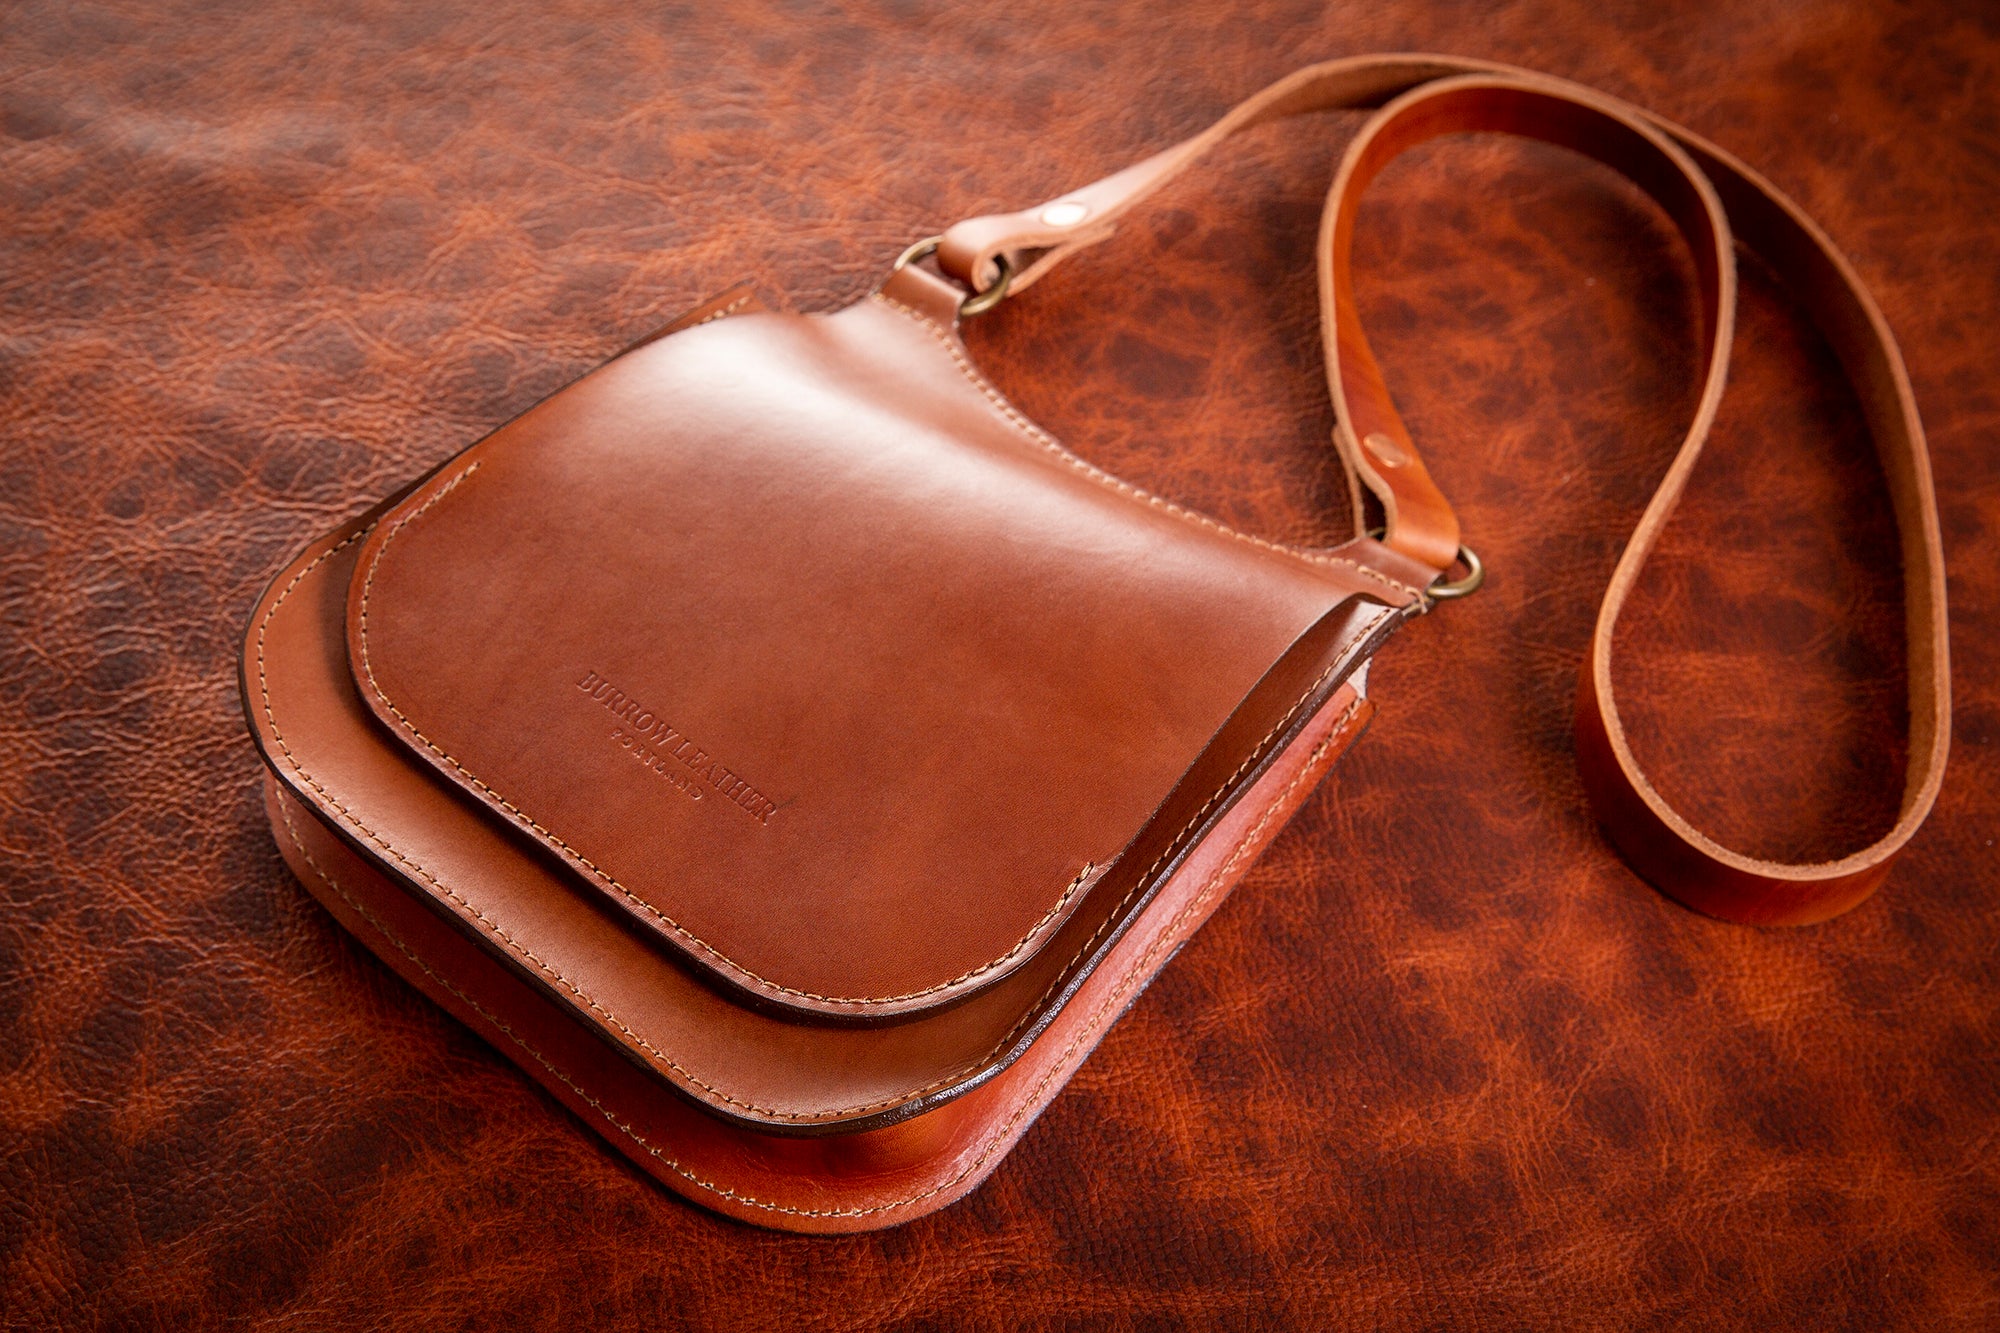 No. 89 Vintage Leather Saddle Bag